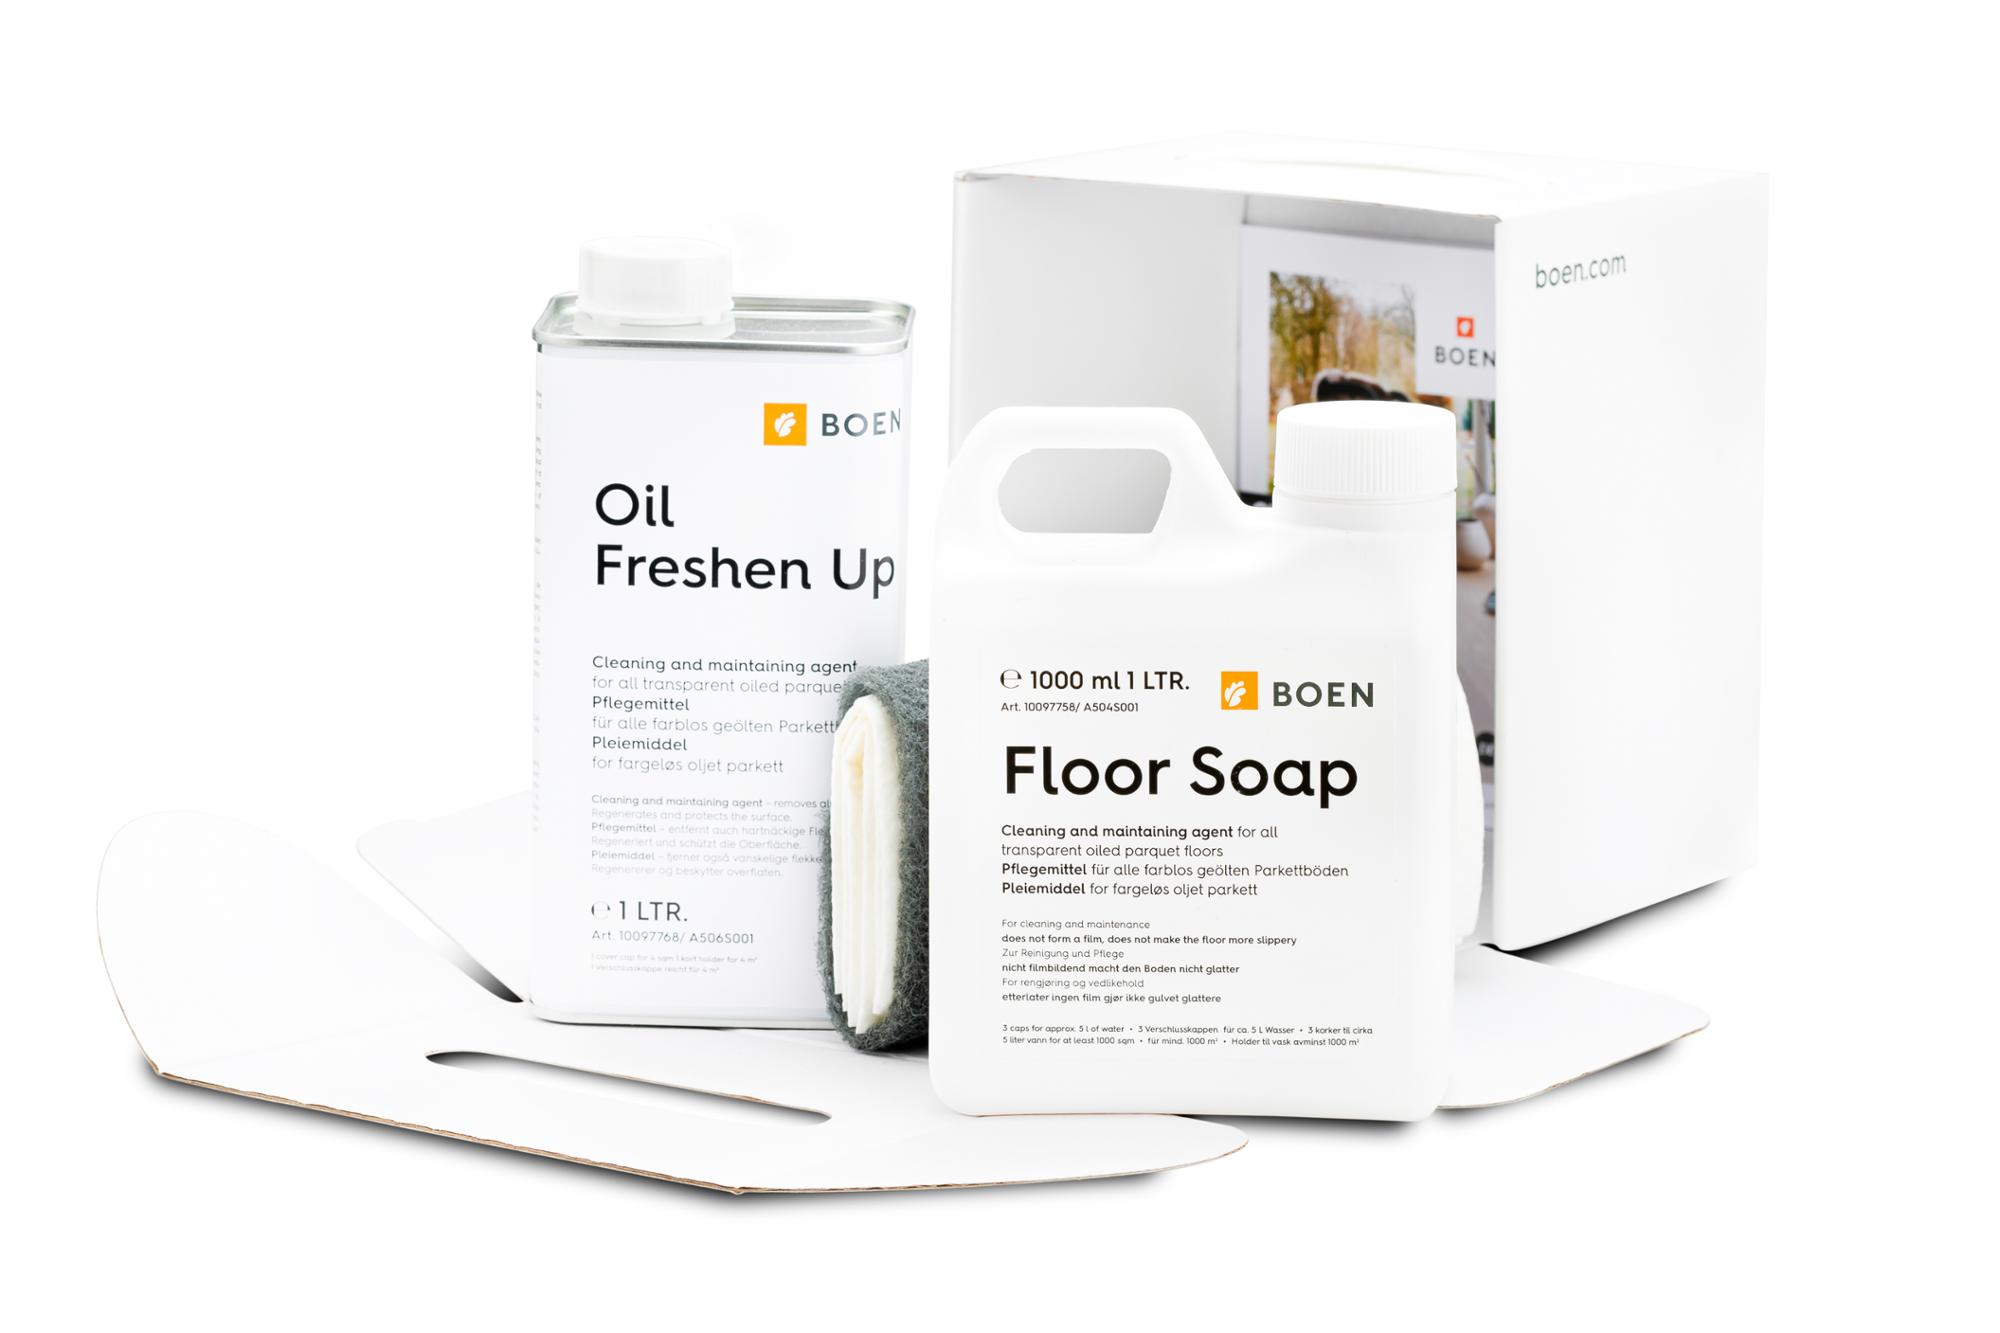 Kit pulizia e manutenzione BOEN pavimenti oliati naturale

Content: 1 litre Floor Soap + 1 litre Oil Freshen Up.